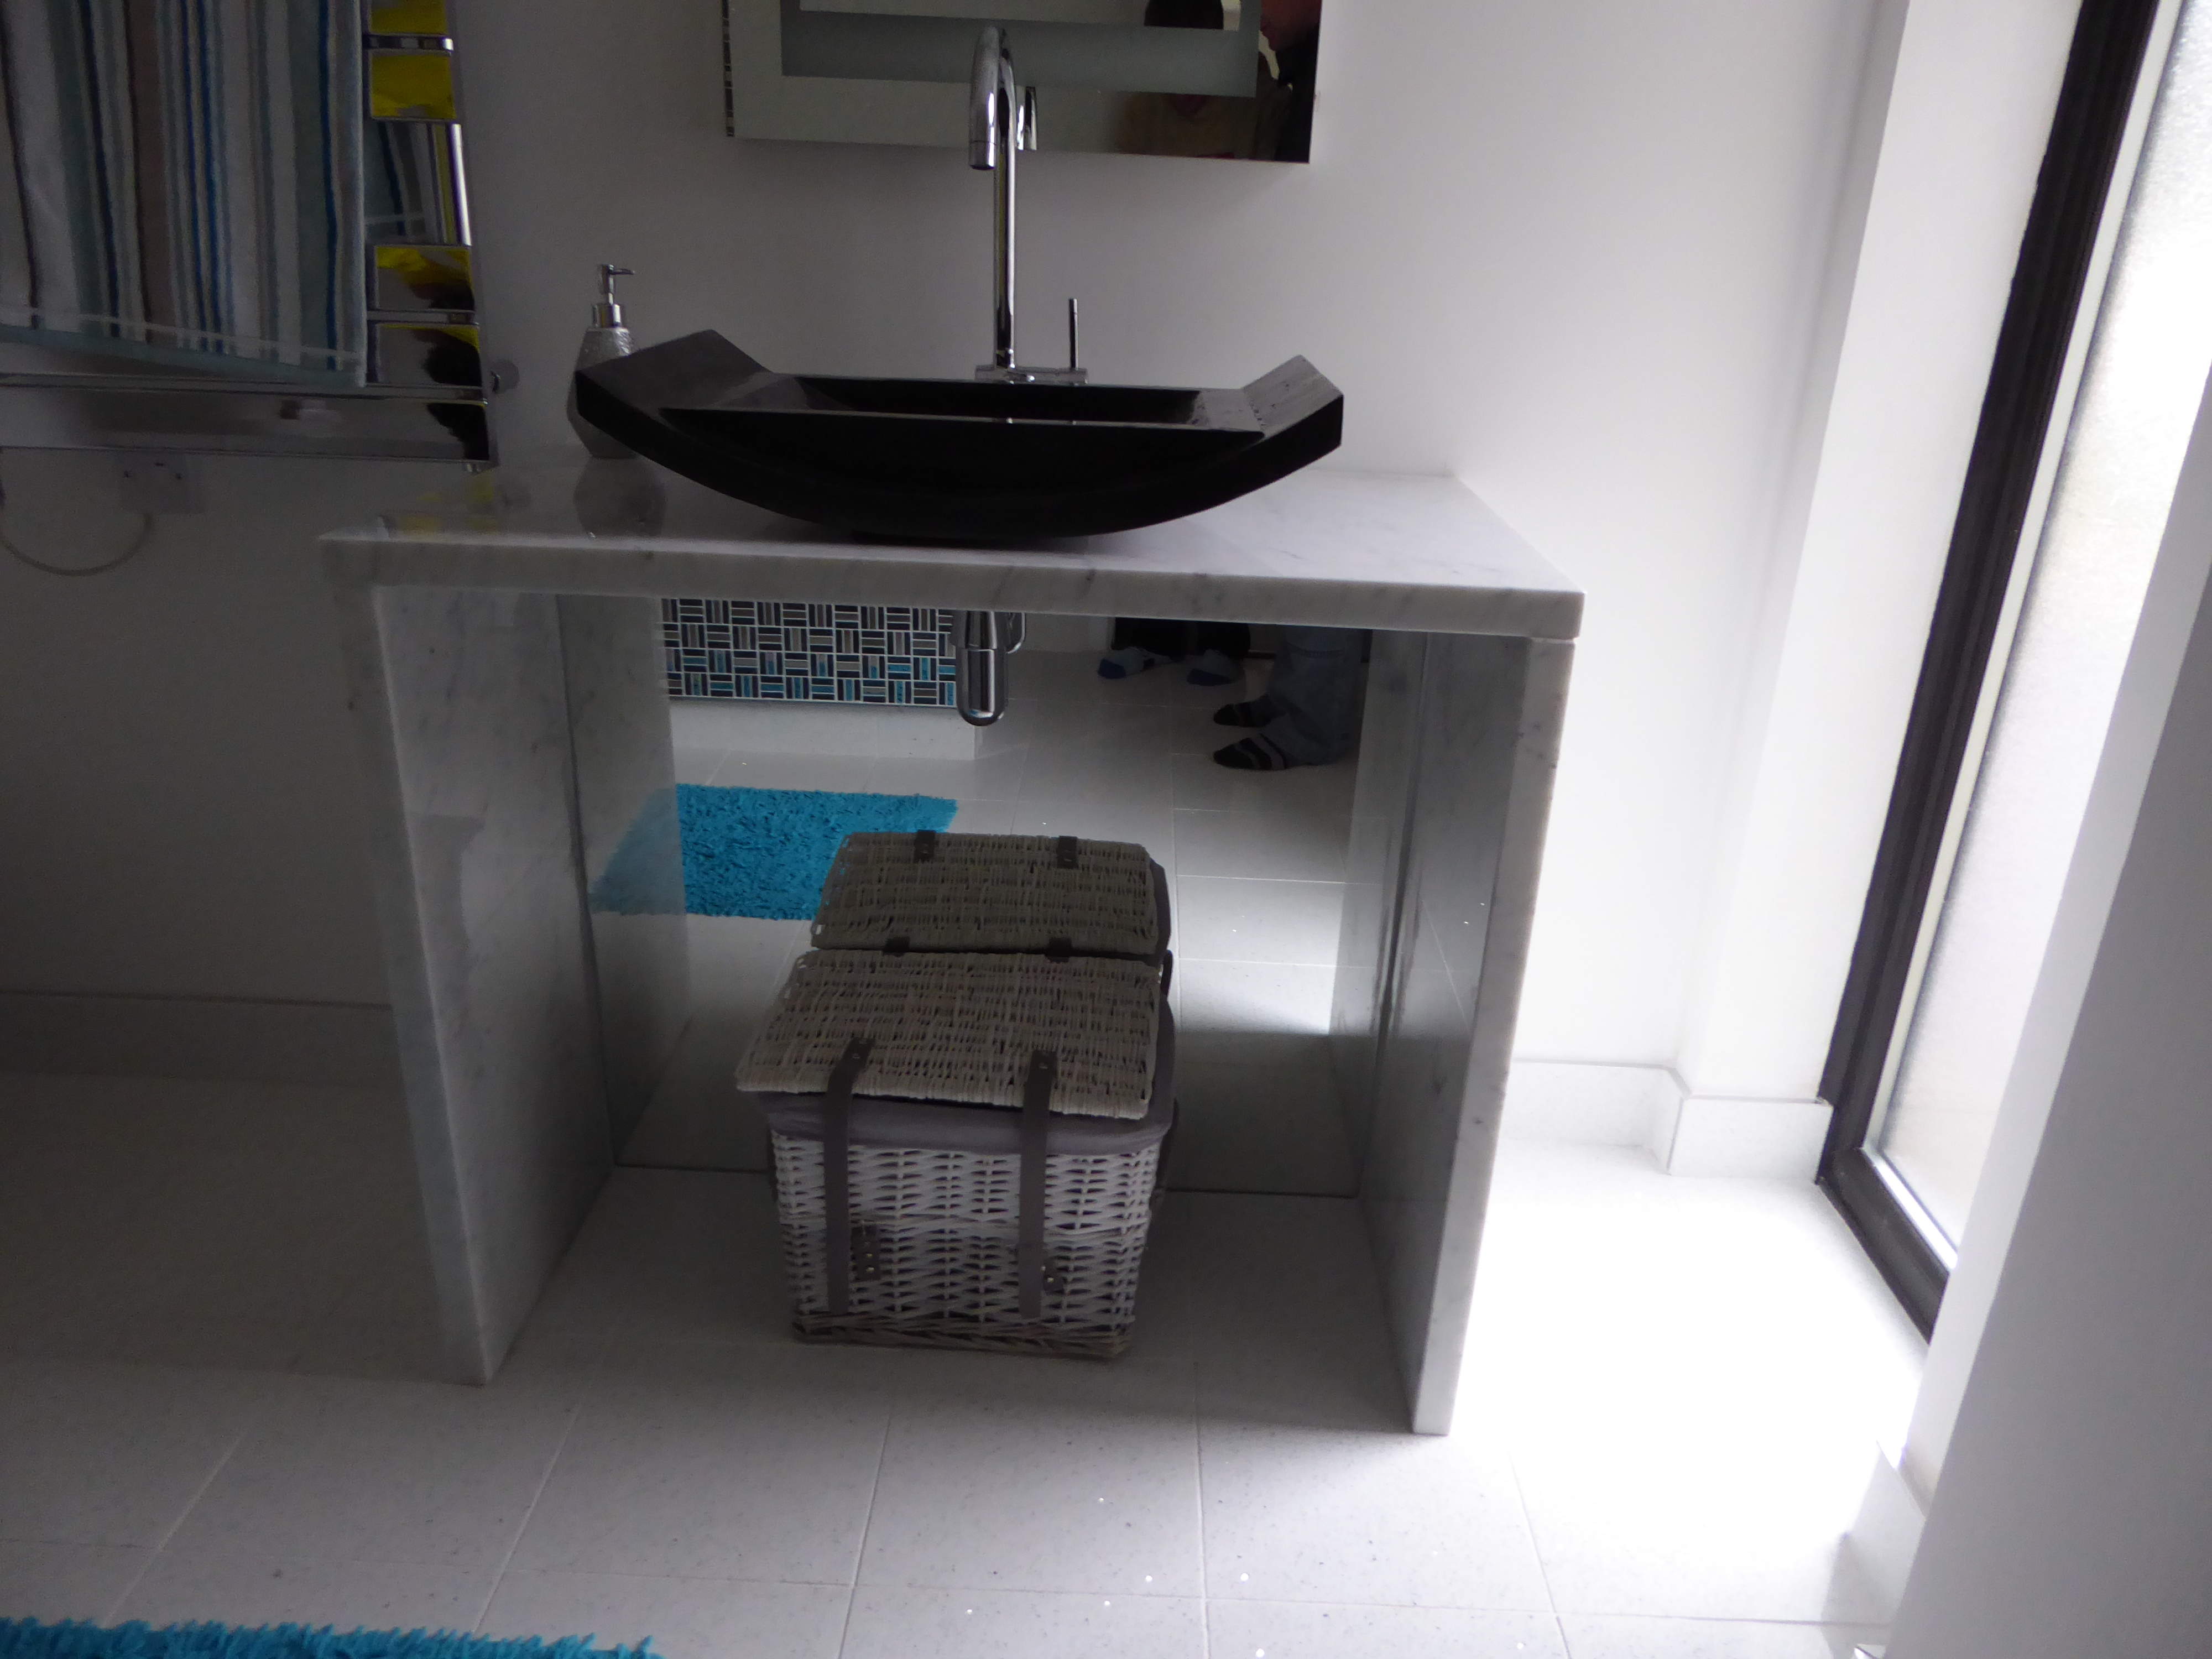 A designer sink unit